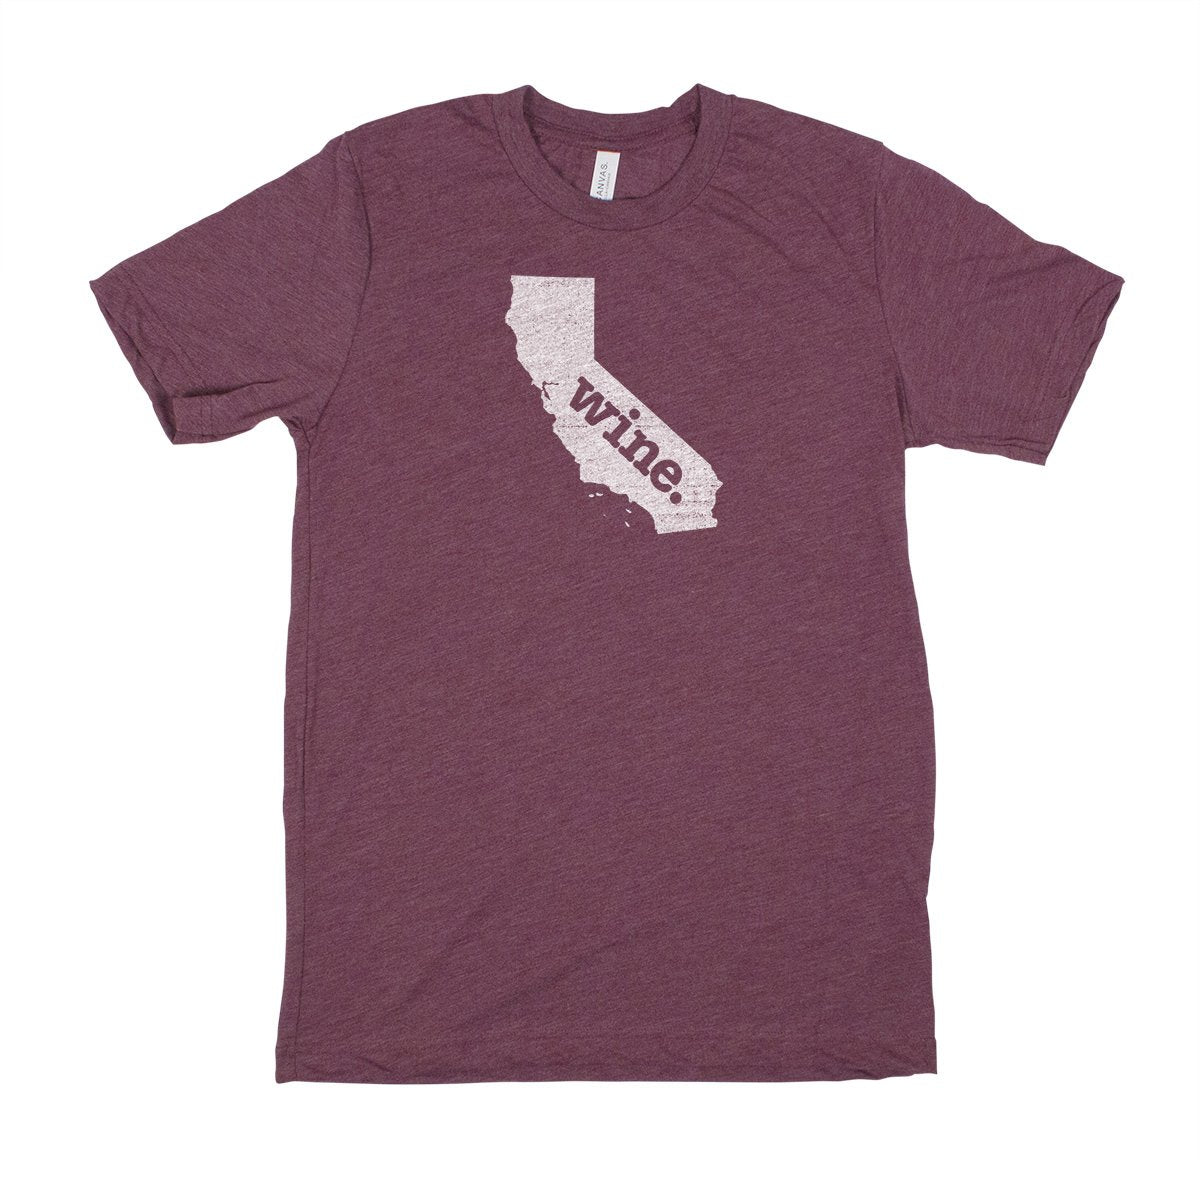 run. Men's Unisex T-Shirt - Michigan